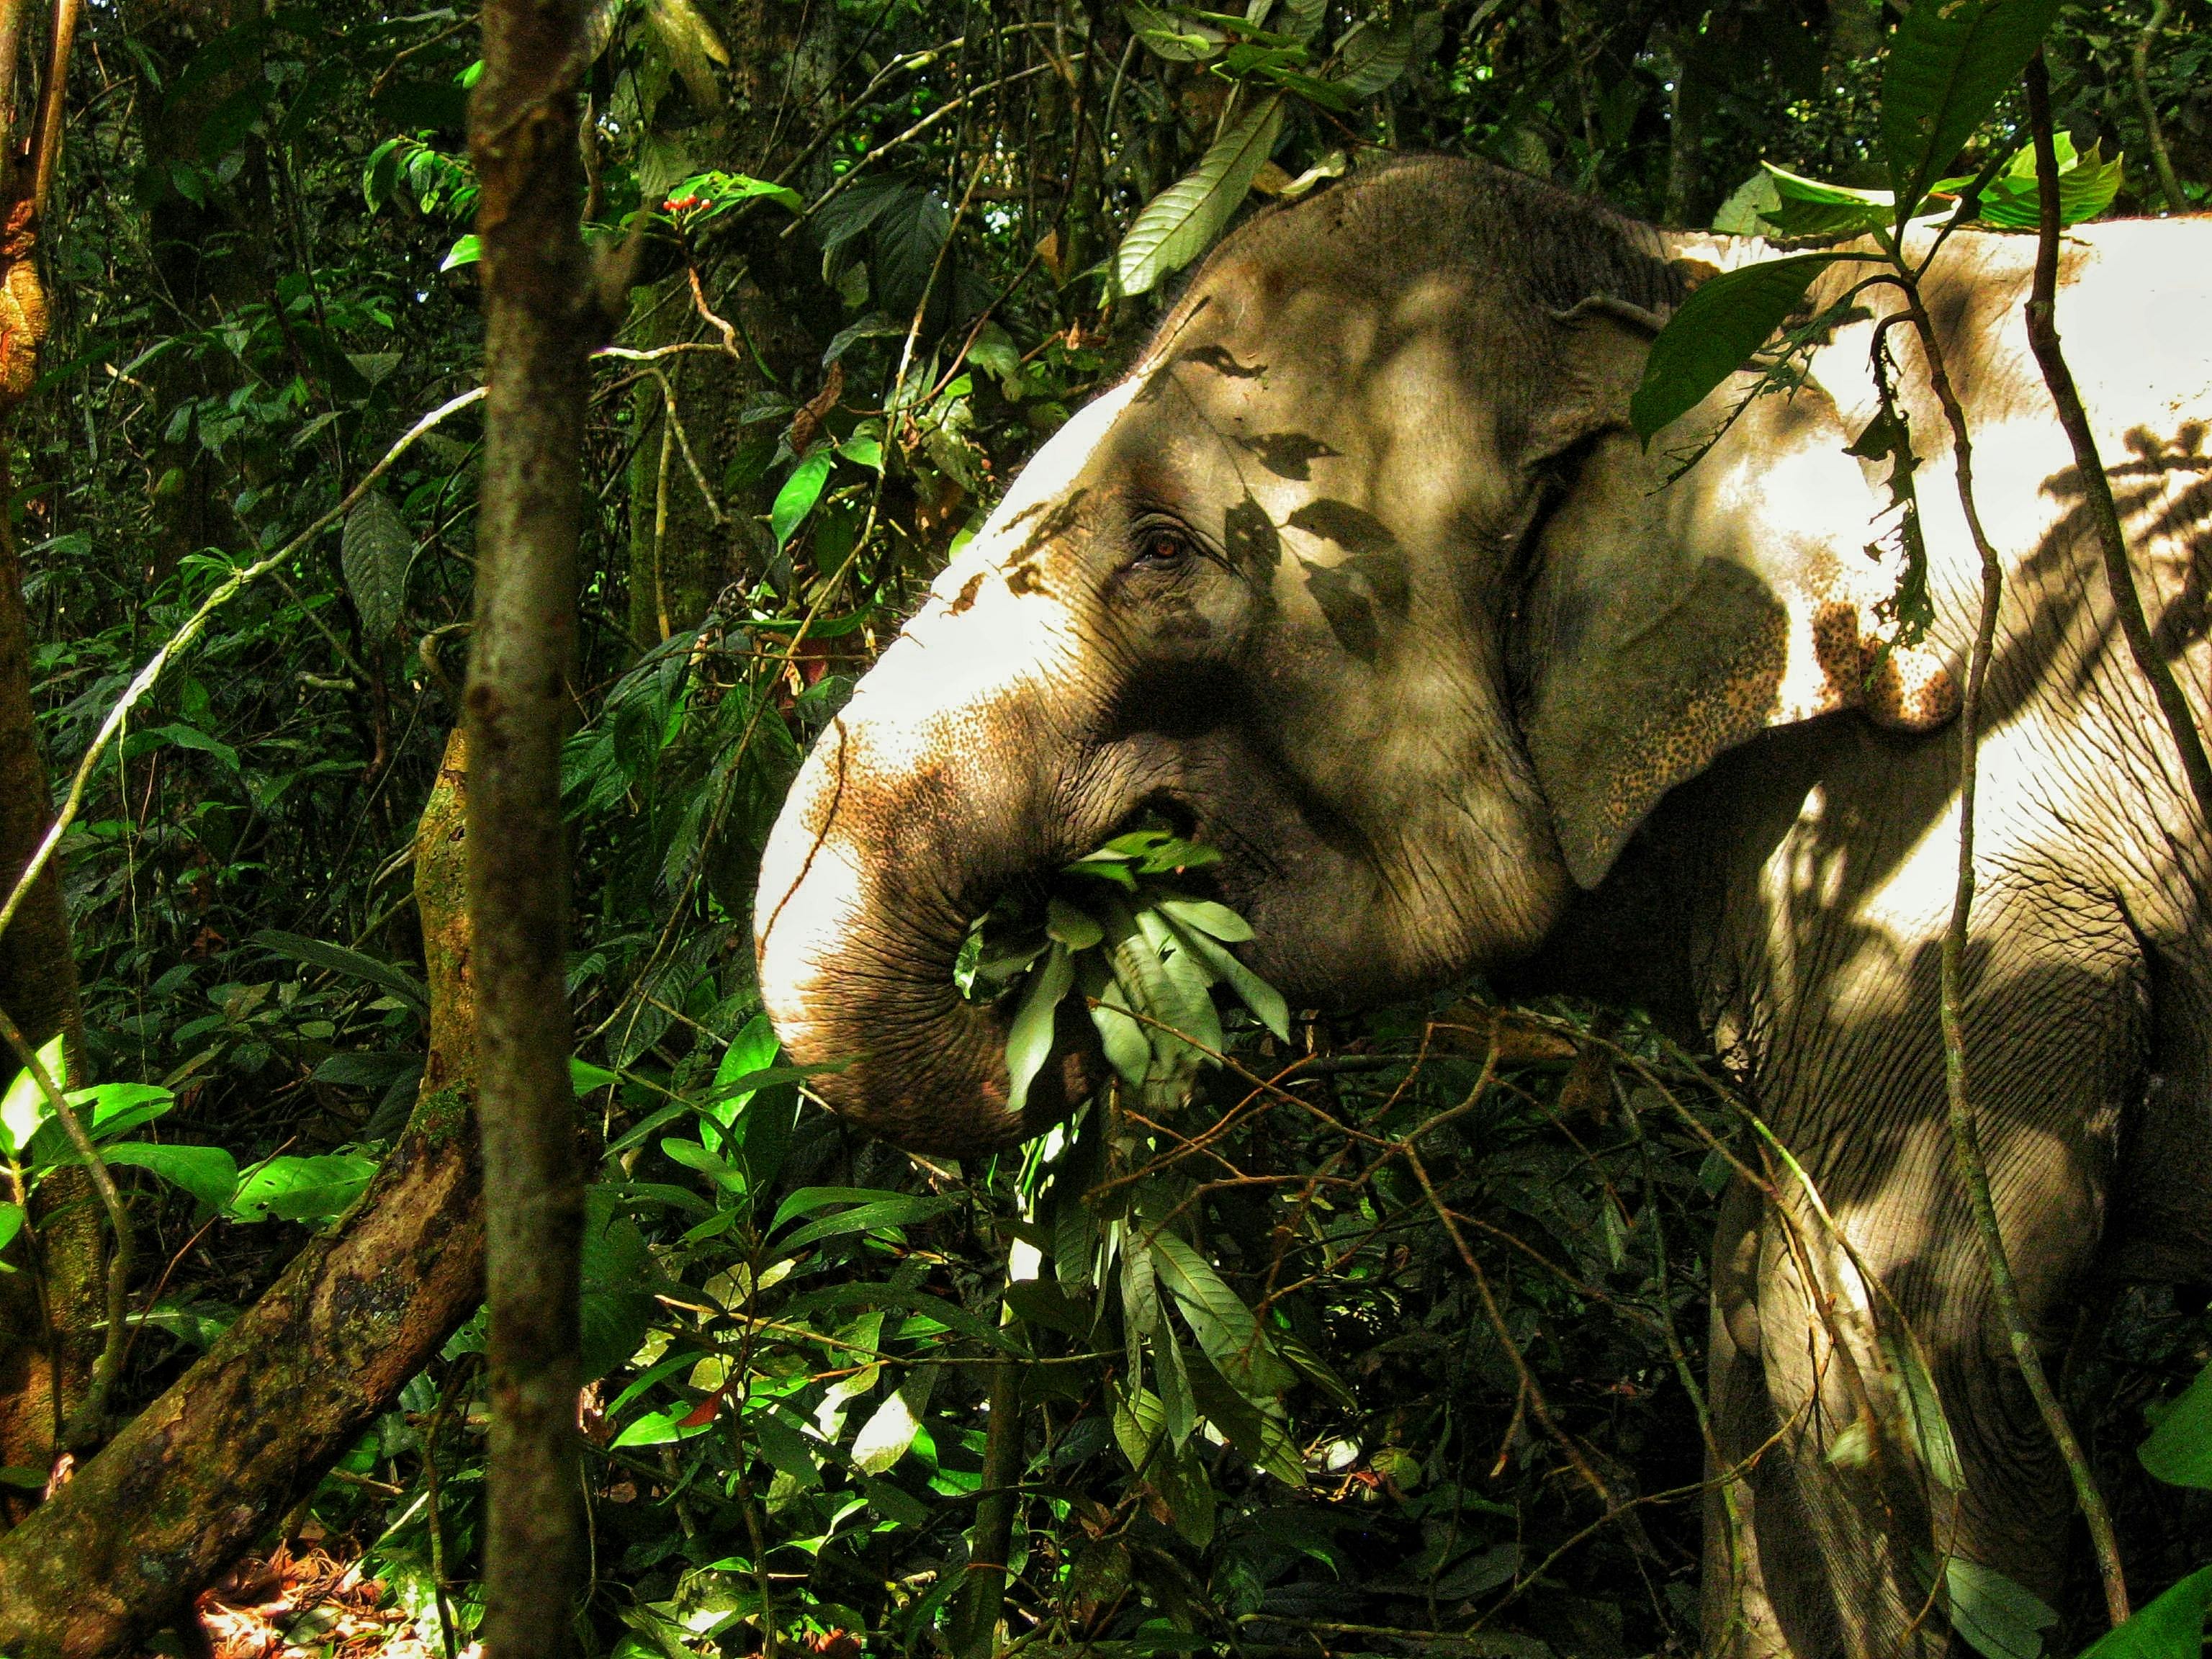 Cover Image for Megagardeners: Gajah si Tukang Kebun Hutan Alami